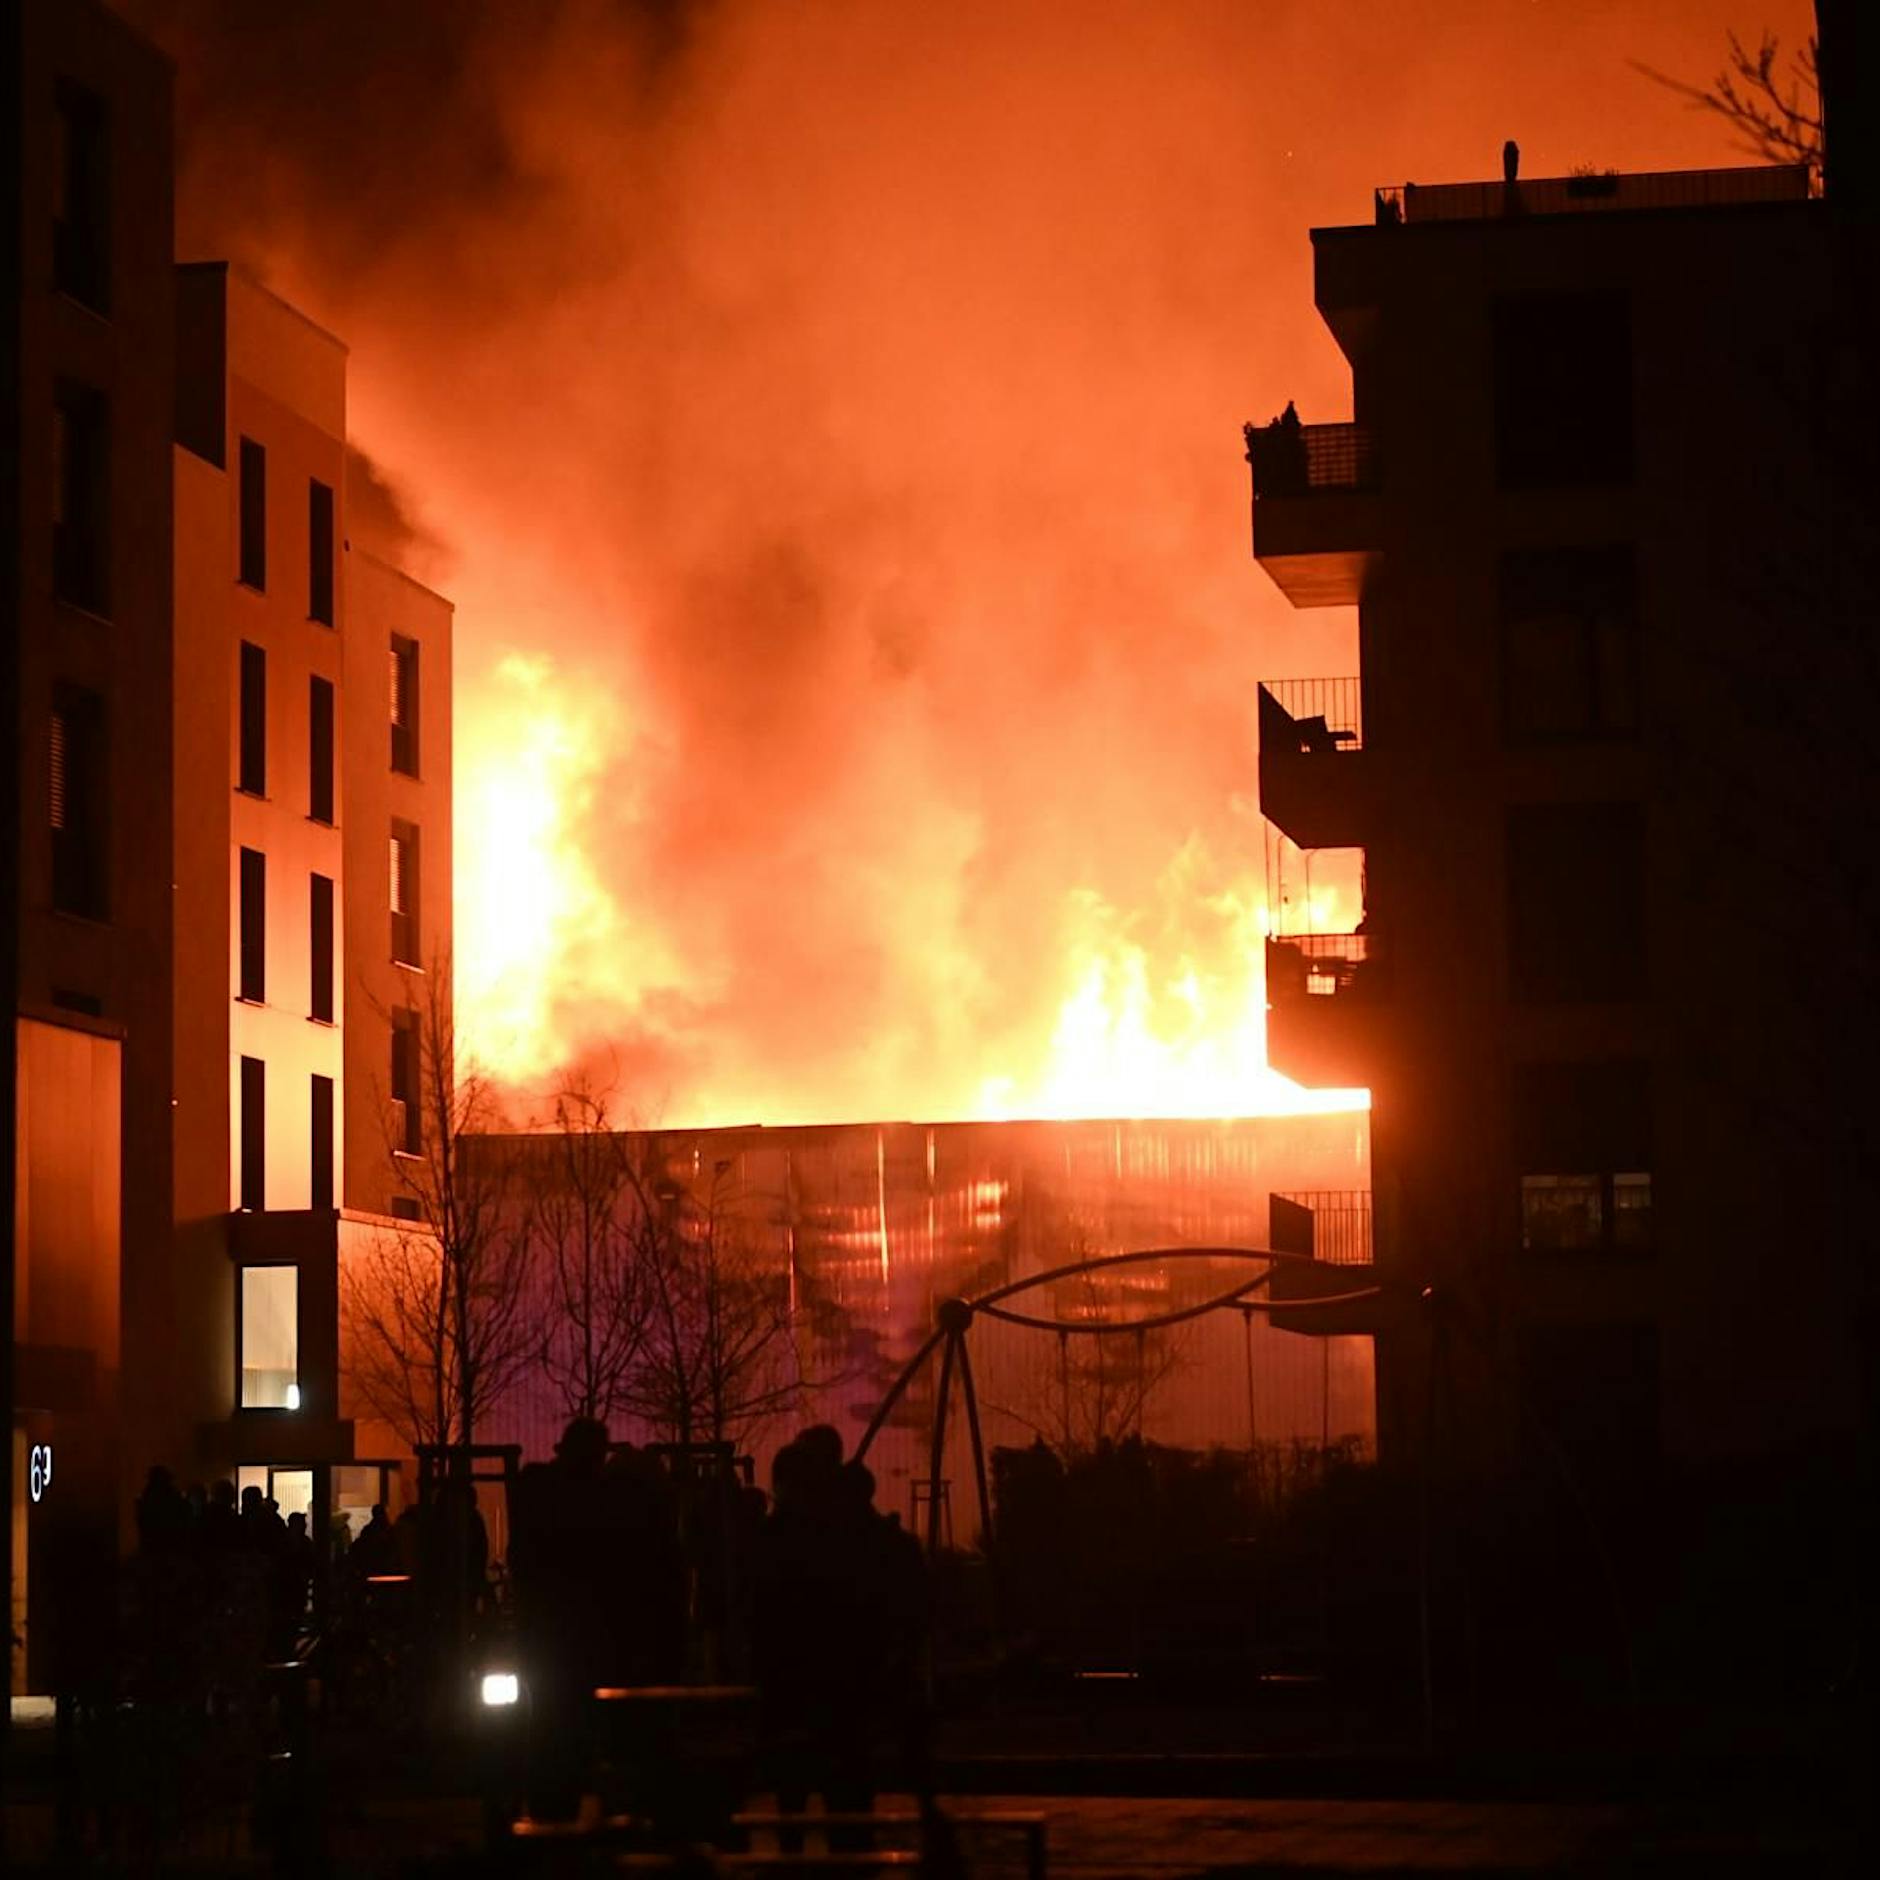 Berlin: Lagerhalle für Parkettböden steht komplett in Flammen